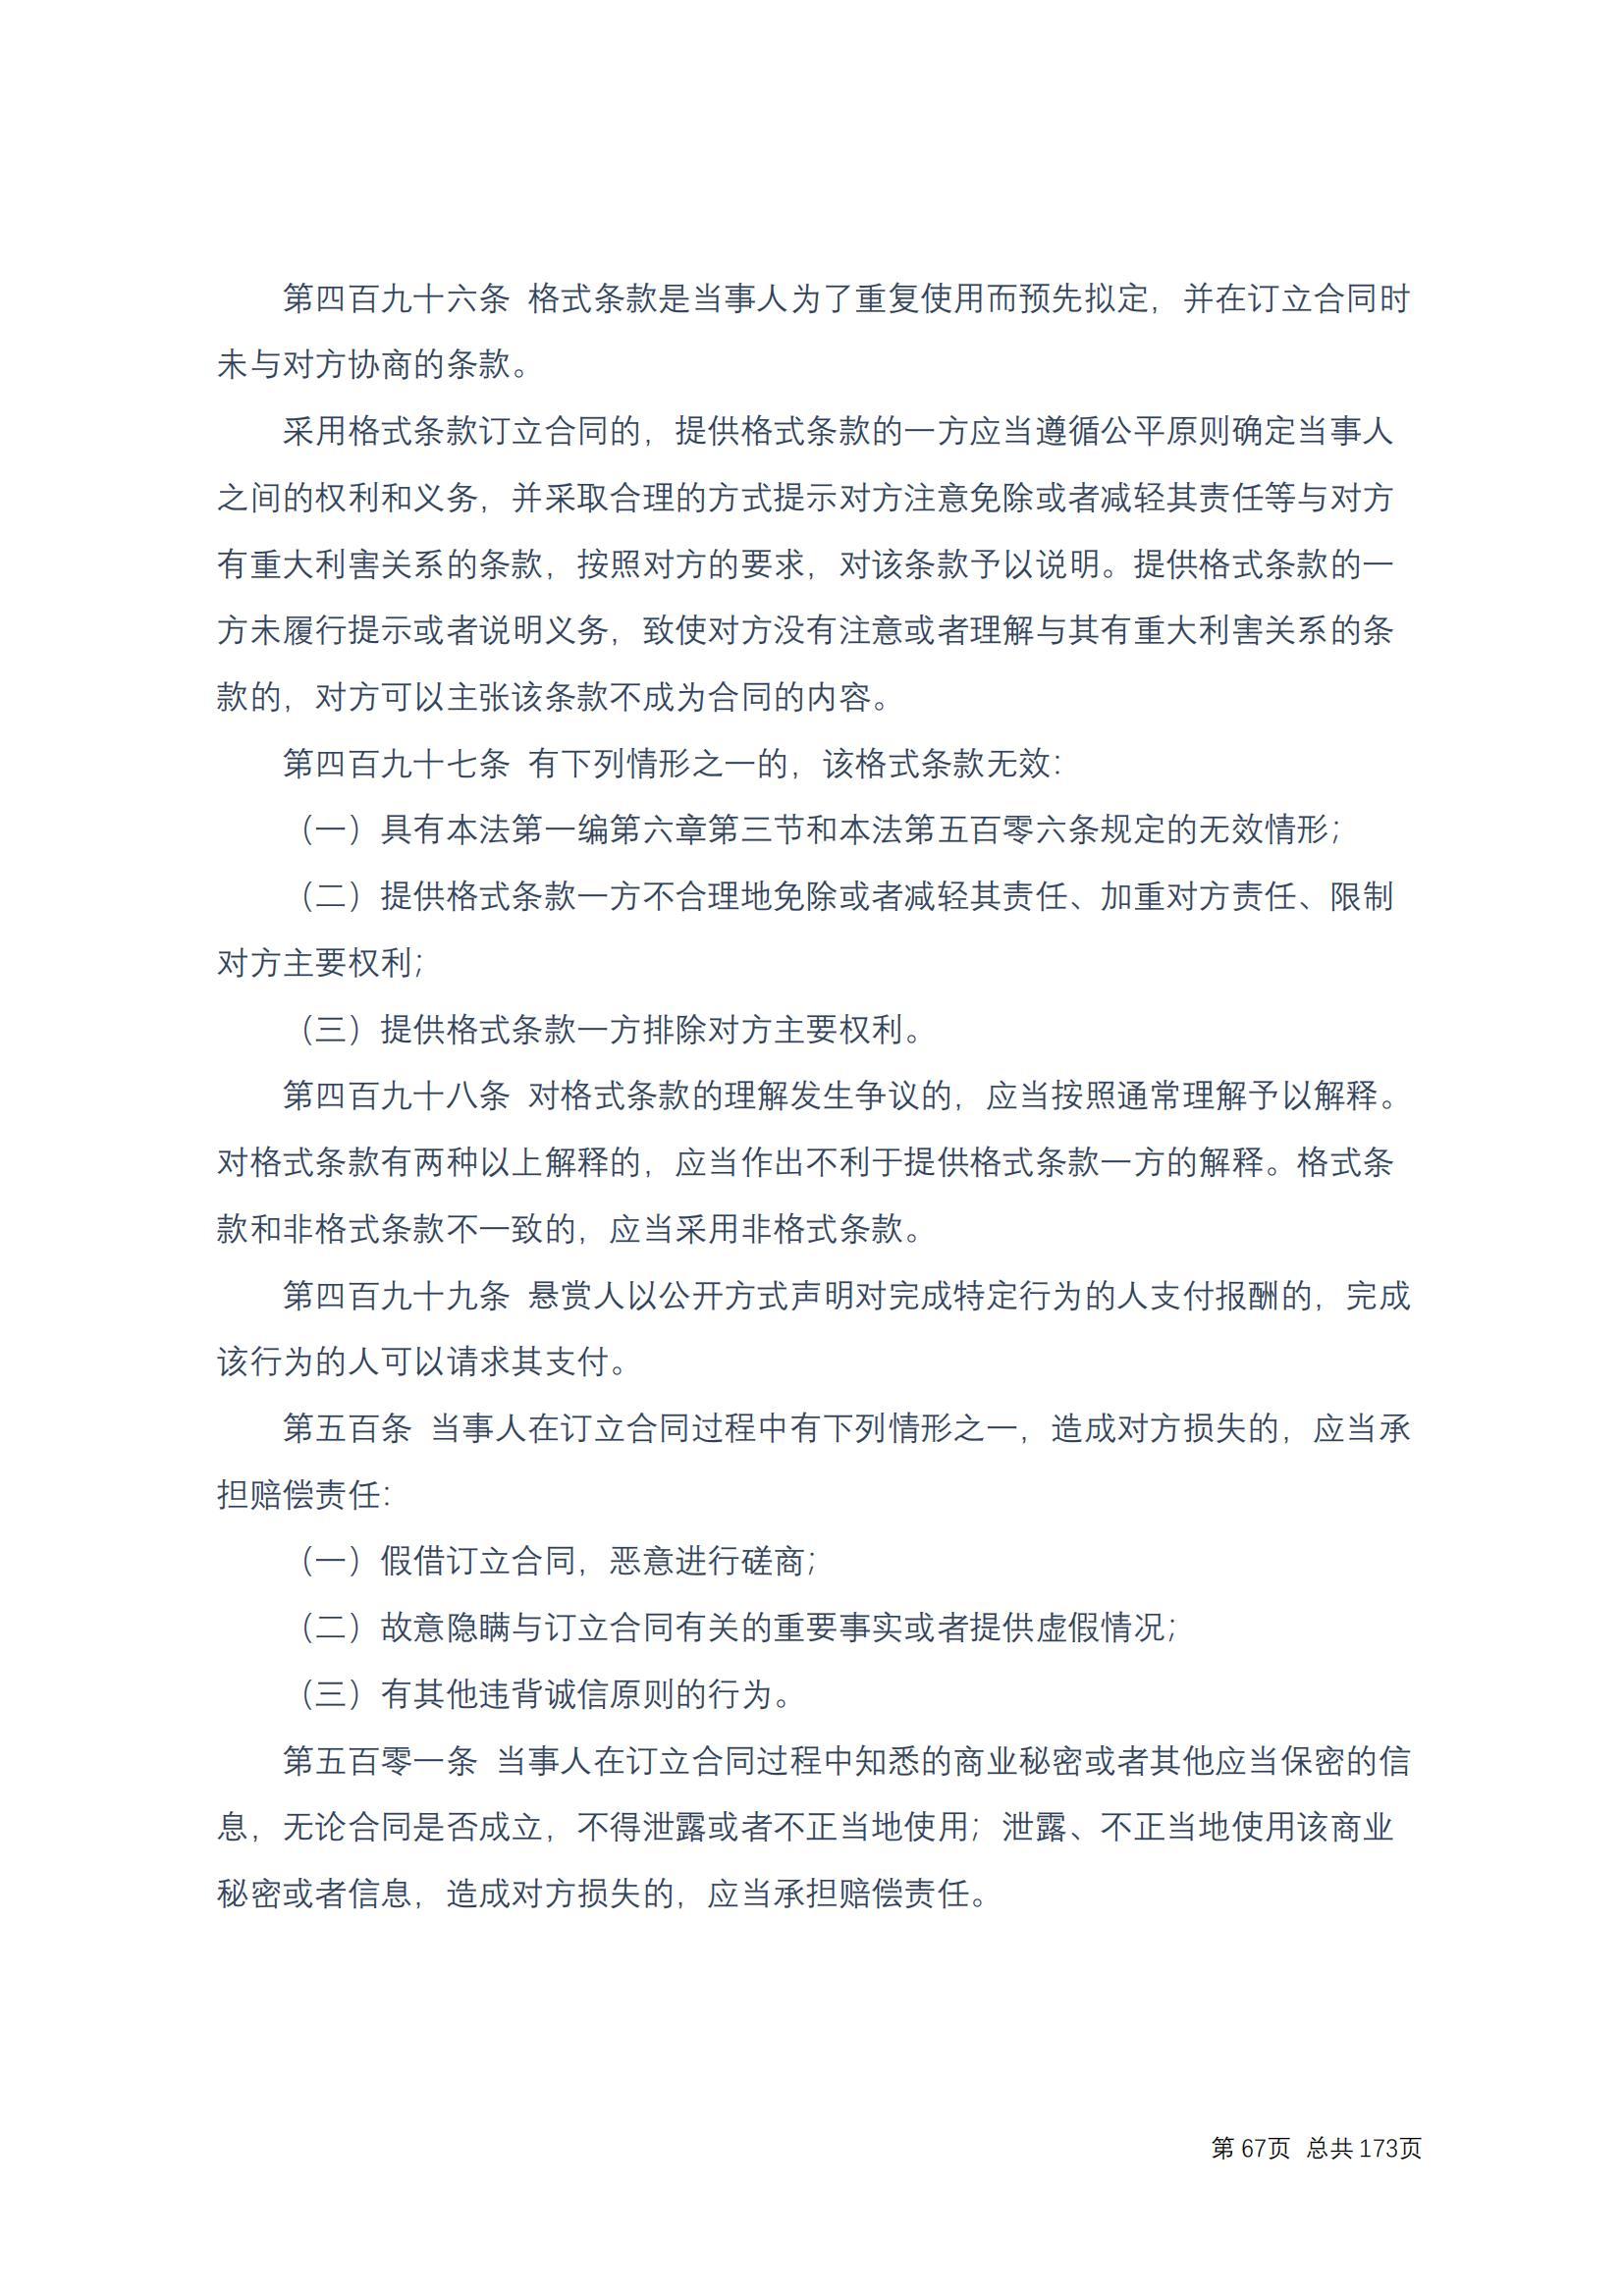 中华人民共和国民法典 修改过_66